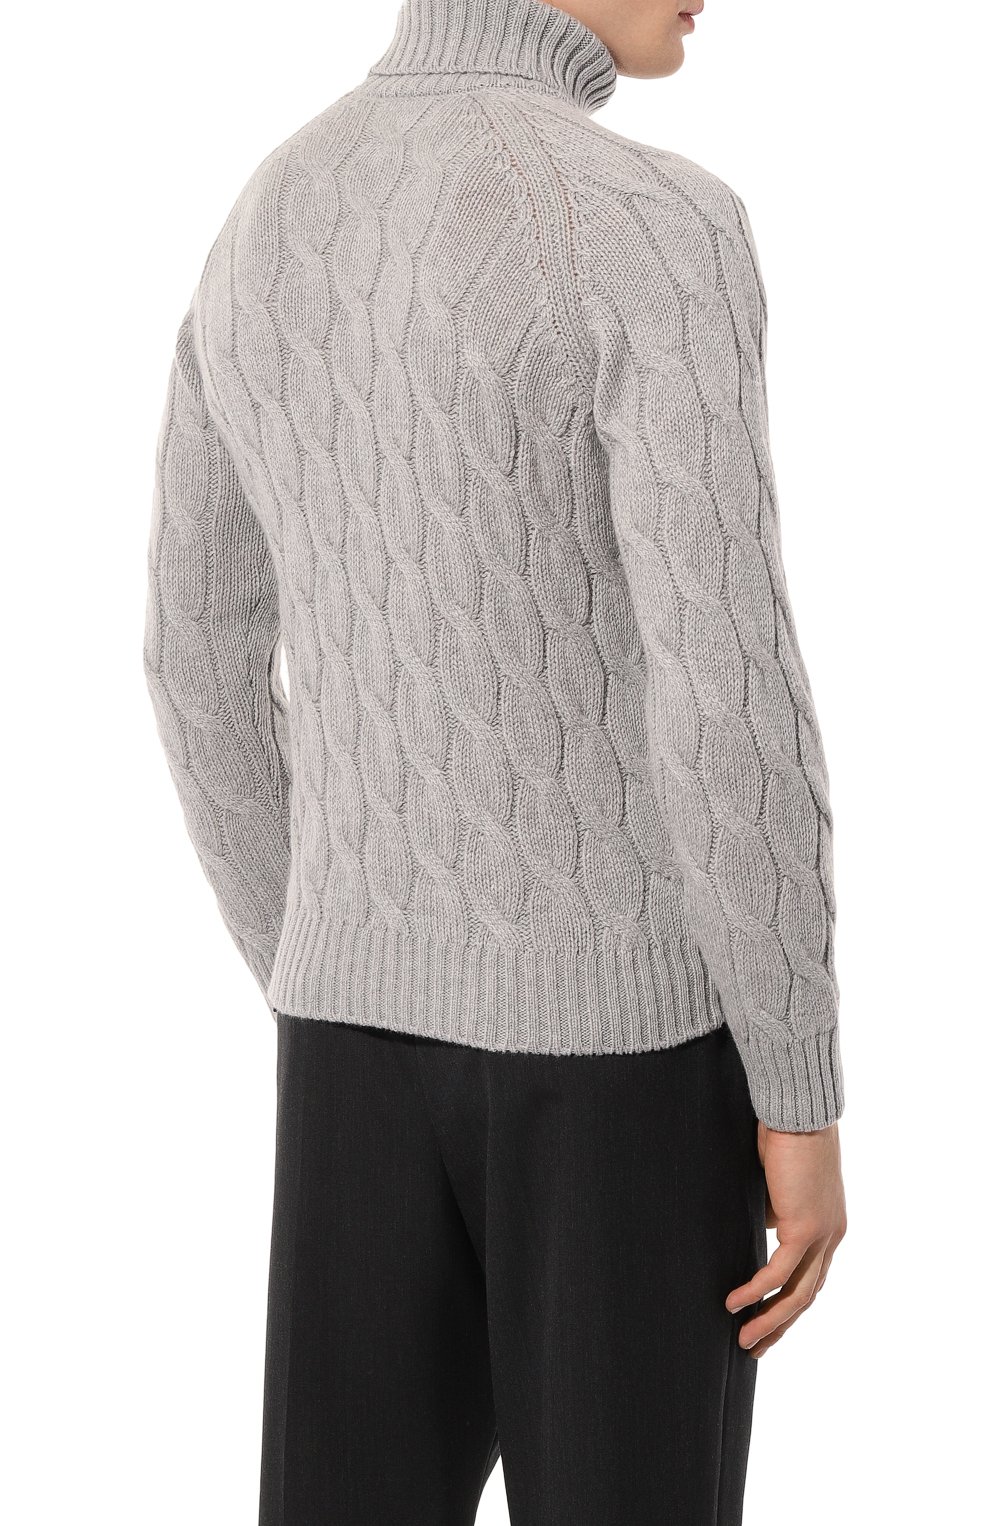 Шерстяной свитер Gran Sasso 13117/22622, цвет серый, размер 46 13117/22622 - фото 4